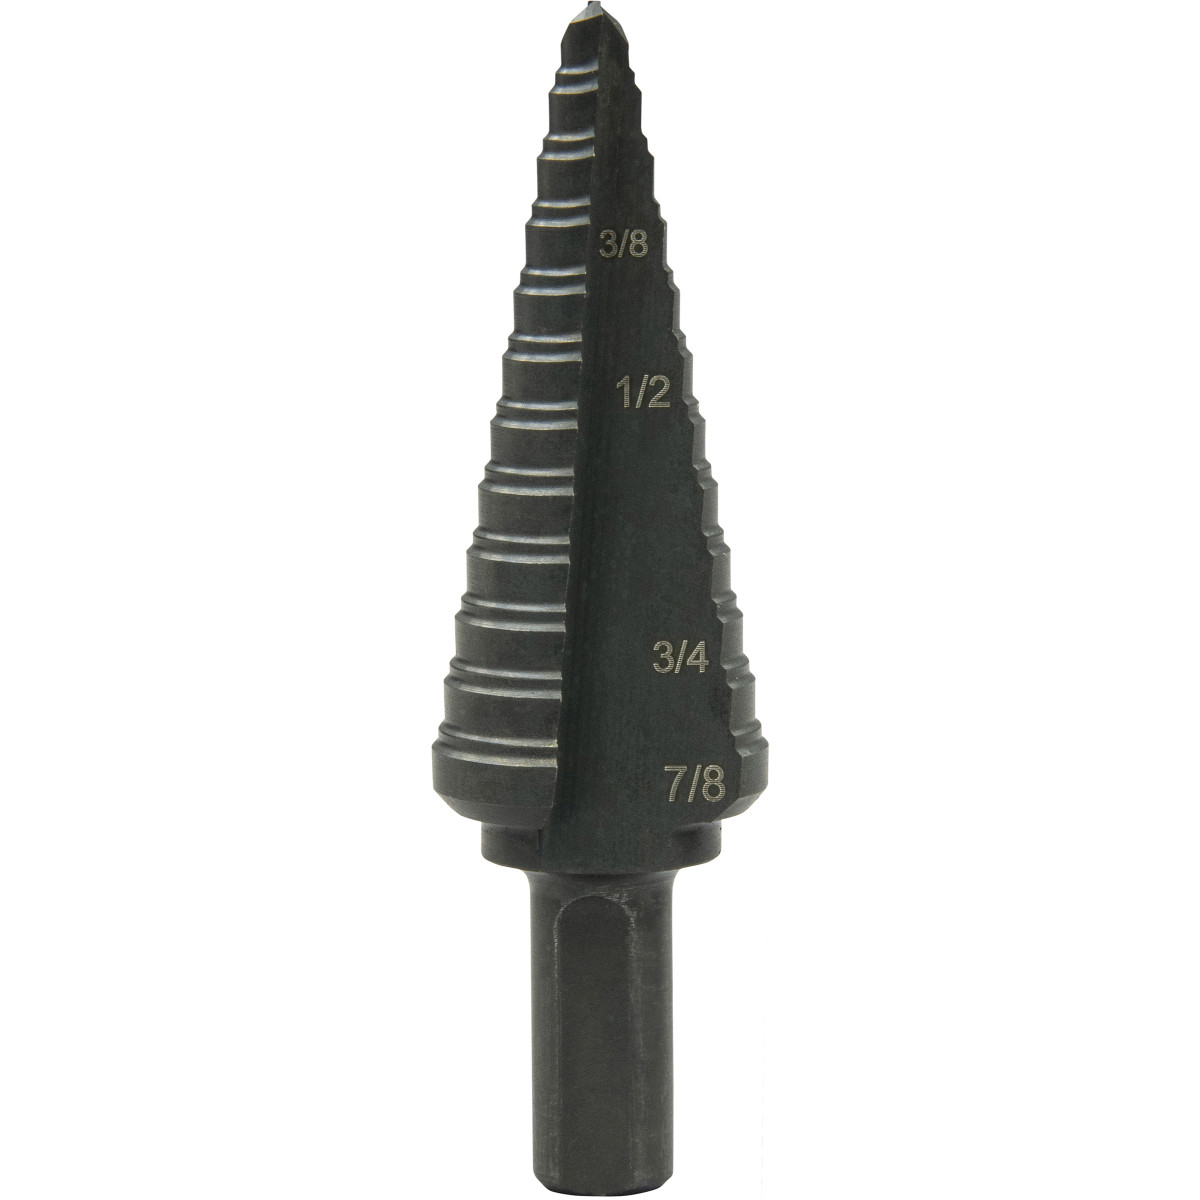 # 2 Morse Taper High Speed Drill Bit New Made in the U.S.A. 0.4531" 29/64" 